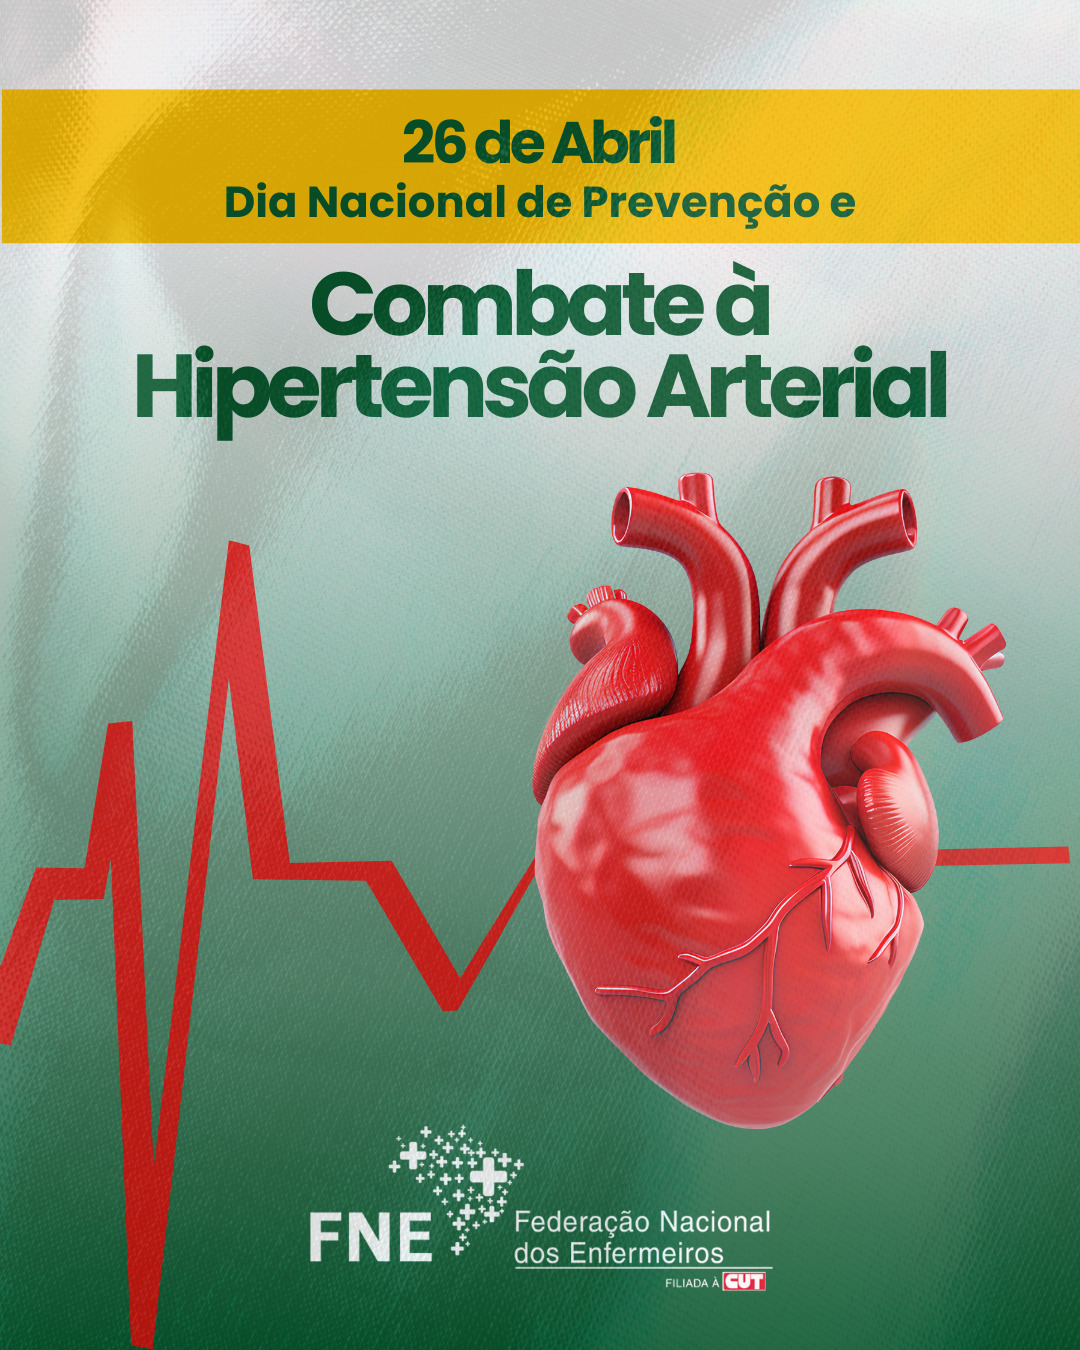 26 de abril - Dia Nacional de Prevenção e Combate à Hipertensão Arterial